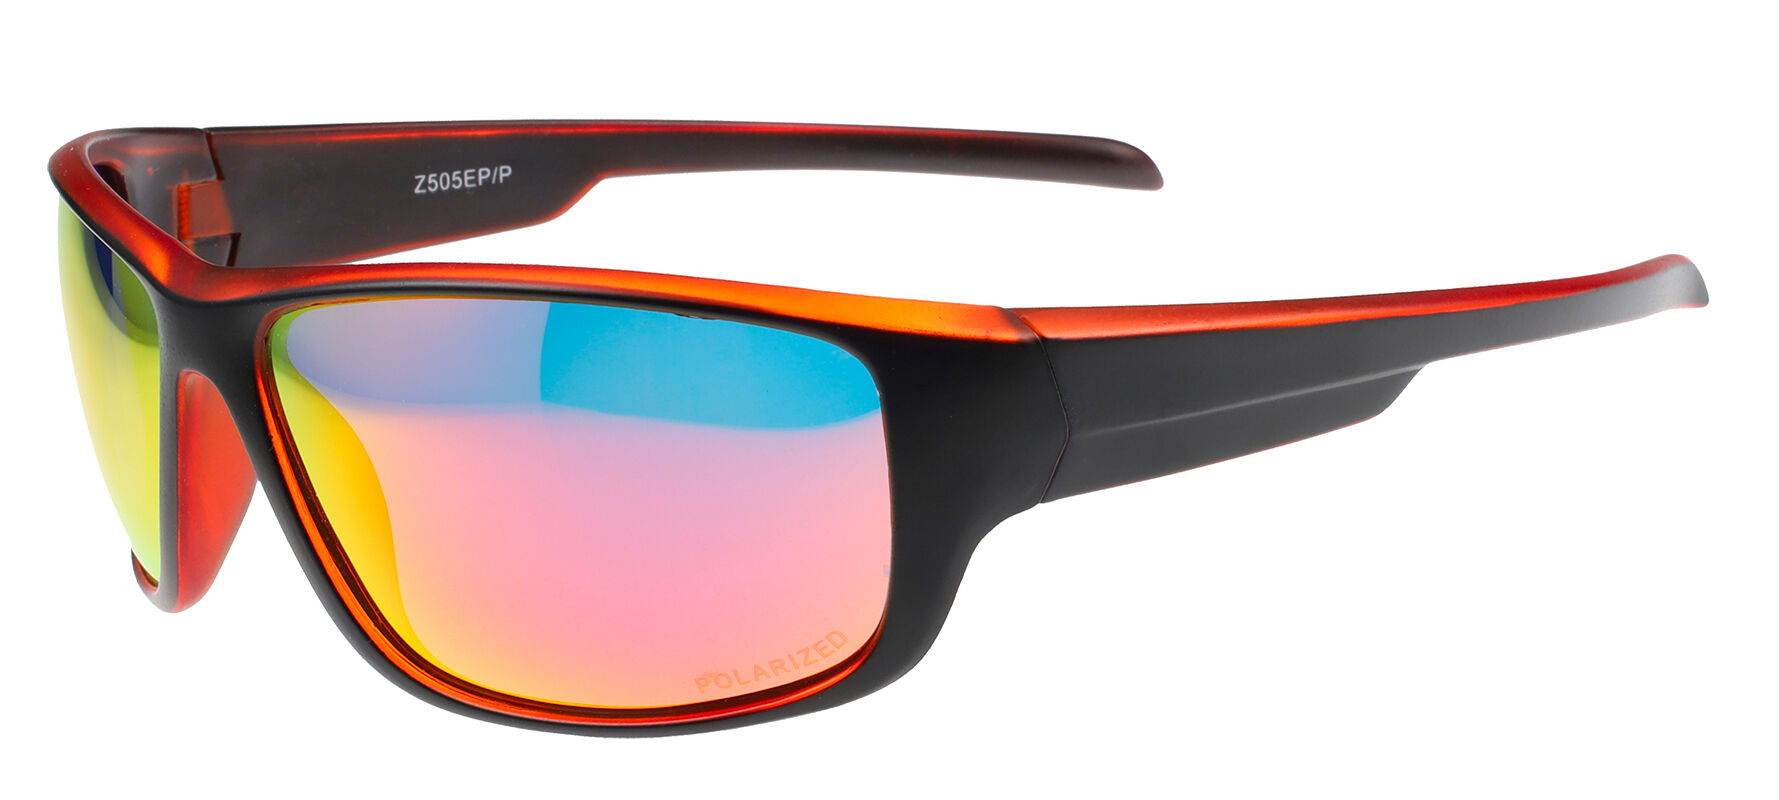 Slnečné okuliare polarizačné Sport/Z505EP/P